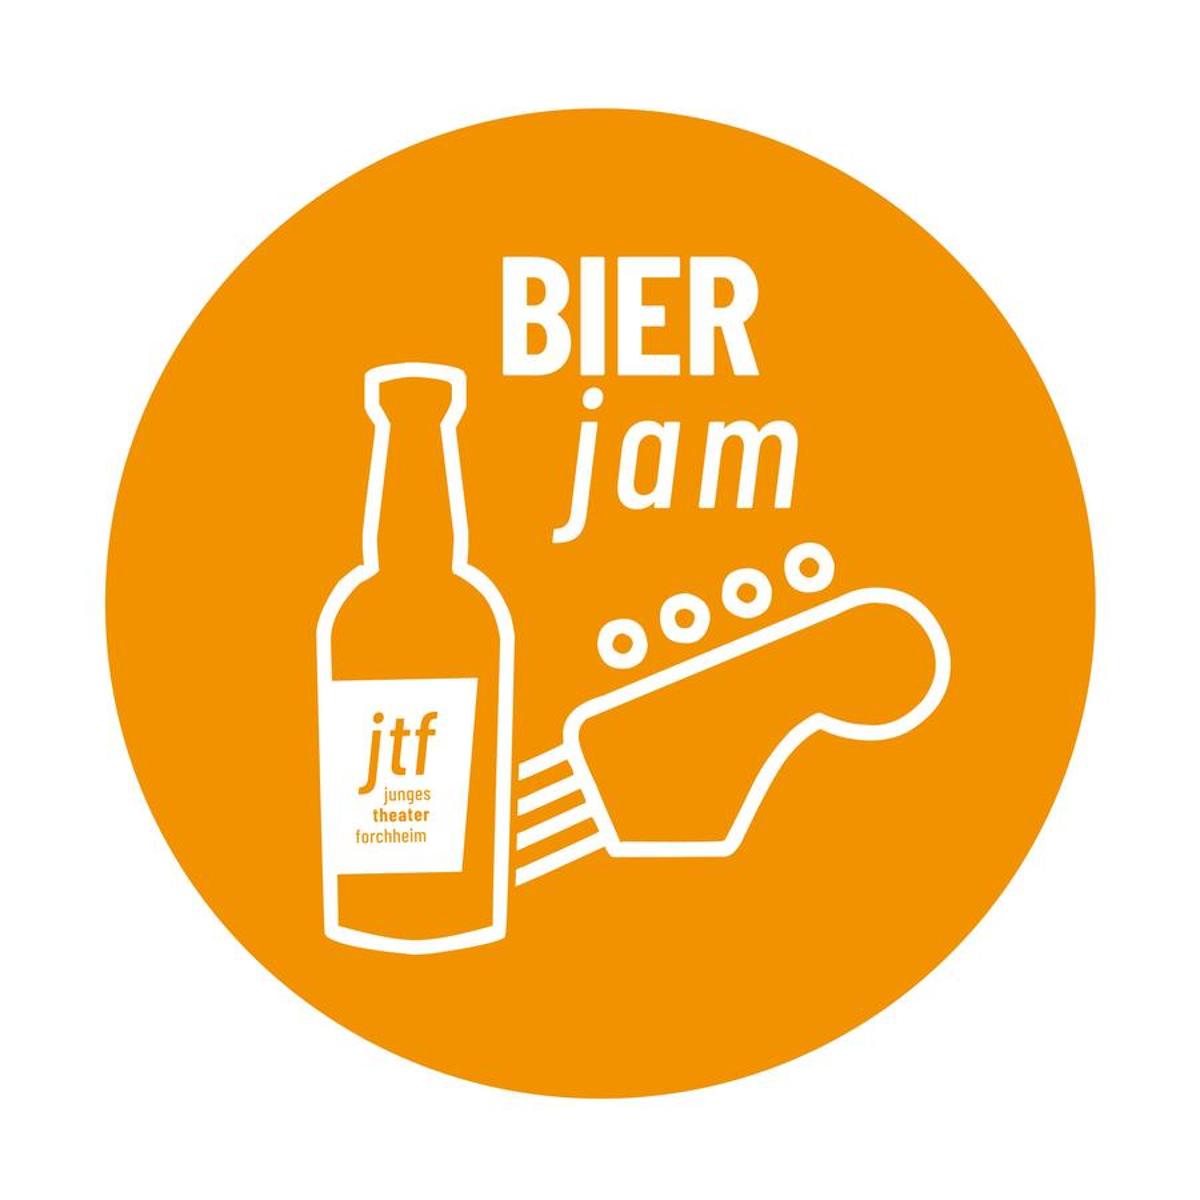 Das Junge Theater Forchheim hat sich mit dem Musiker und Jam-Session-Organisator Gerhard Weiss und dem Bier-Experten Claus Meinhardt zusammengetan und eine neue Reihe ins Leben gerufen: Bier-Jam!Im bewährten Jam-Session-Format treffen Bier-Raritäten auf regionale Klänge und Stimmen – D...